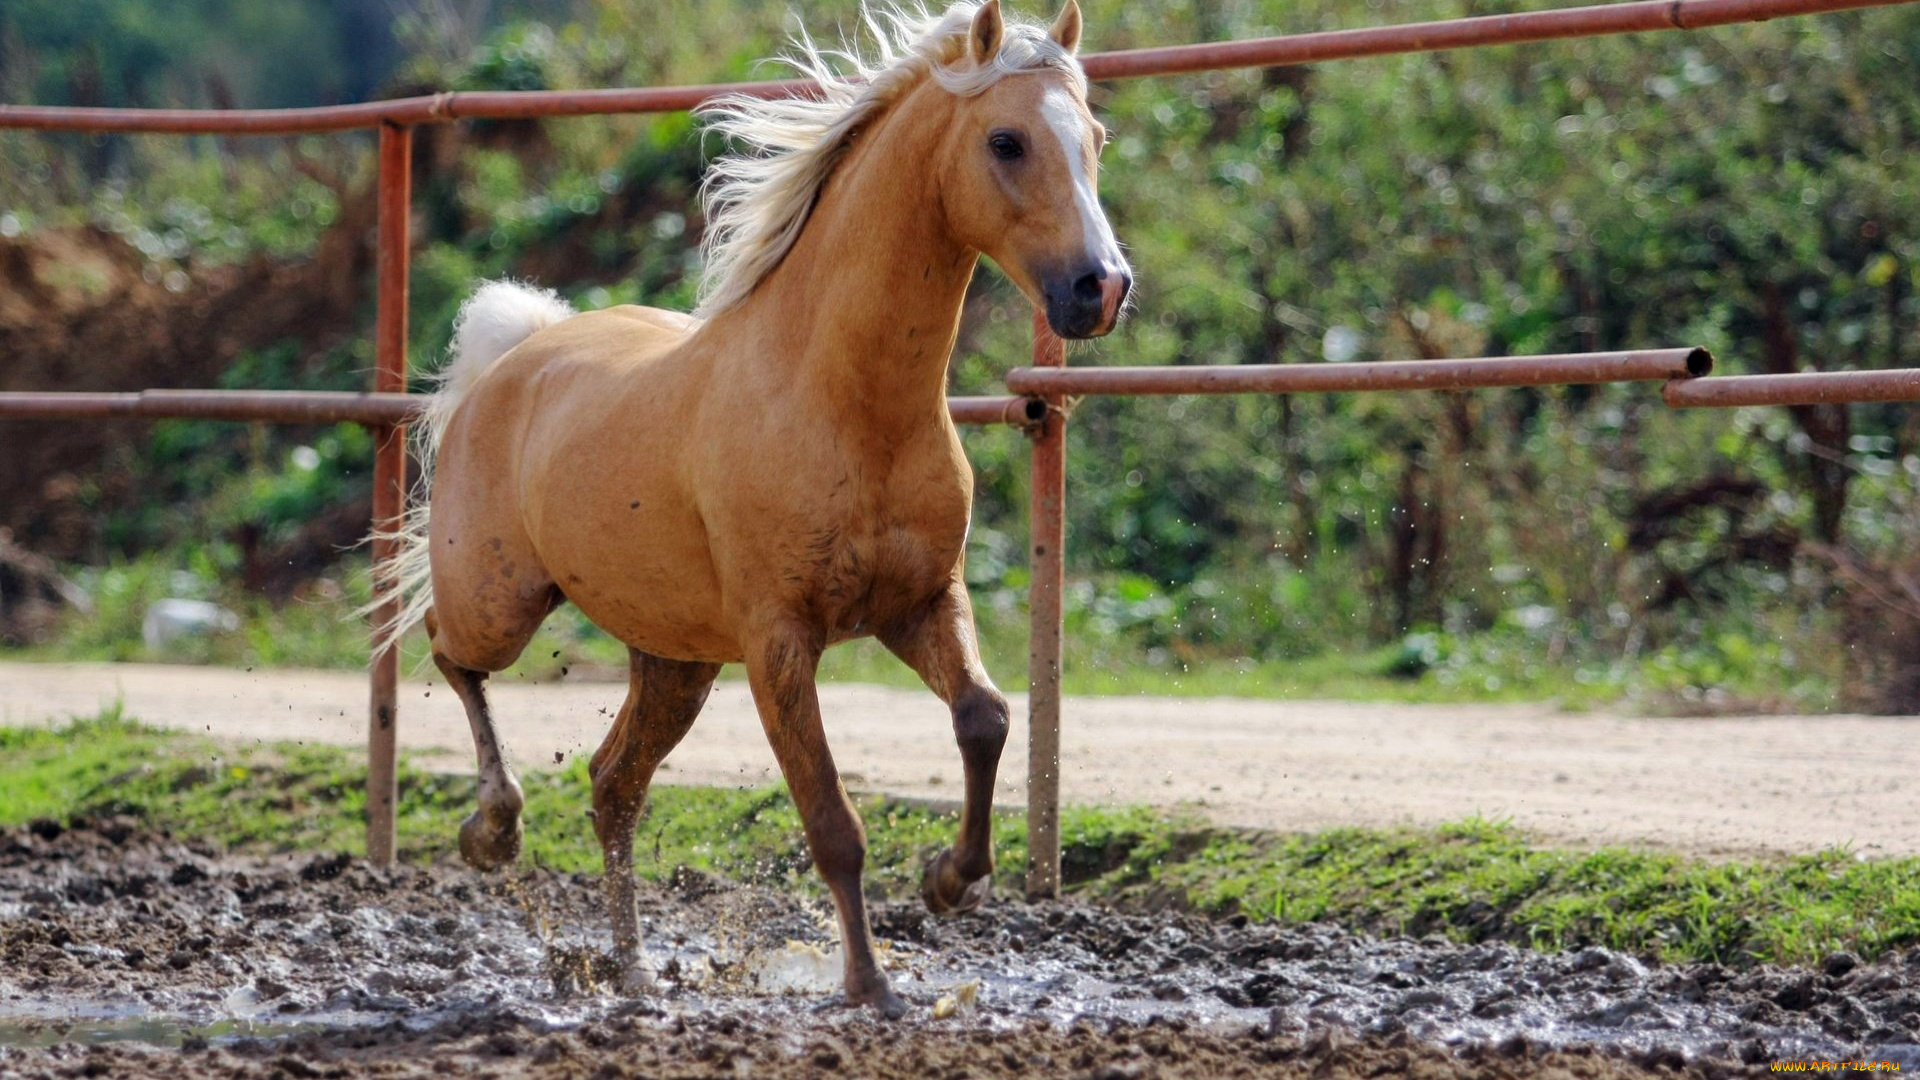 животные, лошади, ограда, дорога, грязь, буланая, лошадь